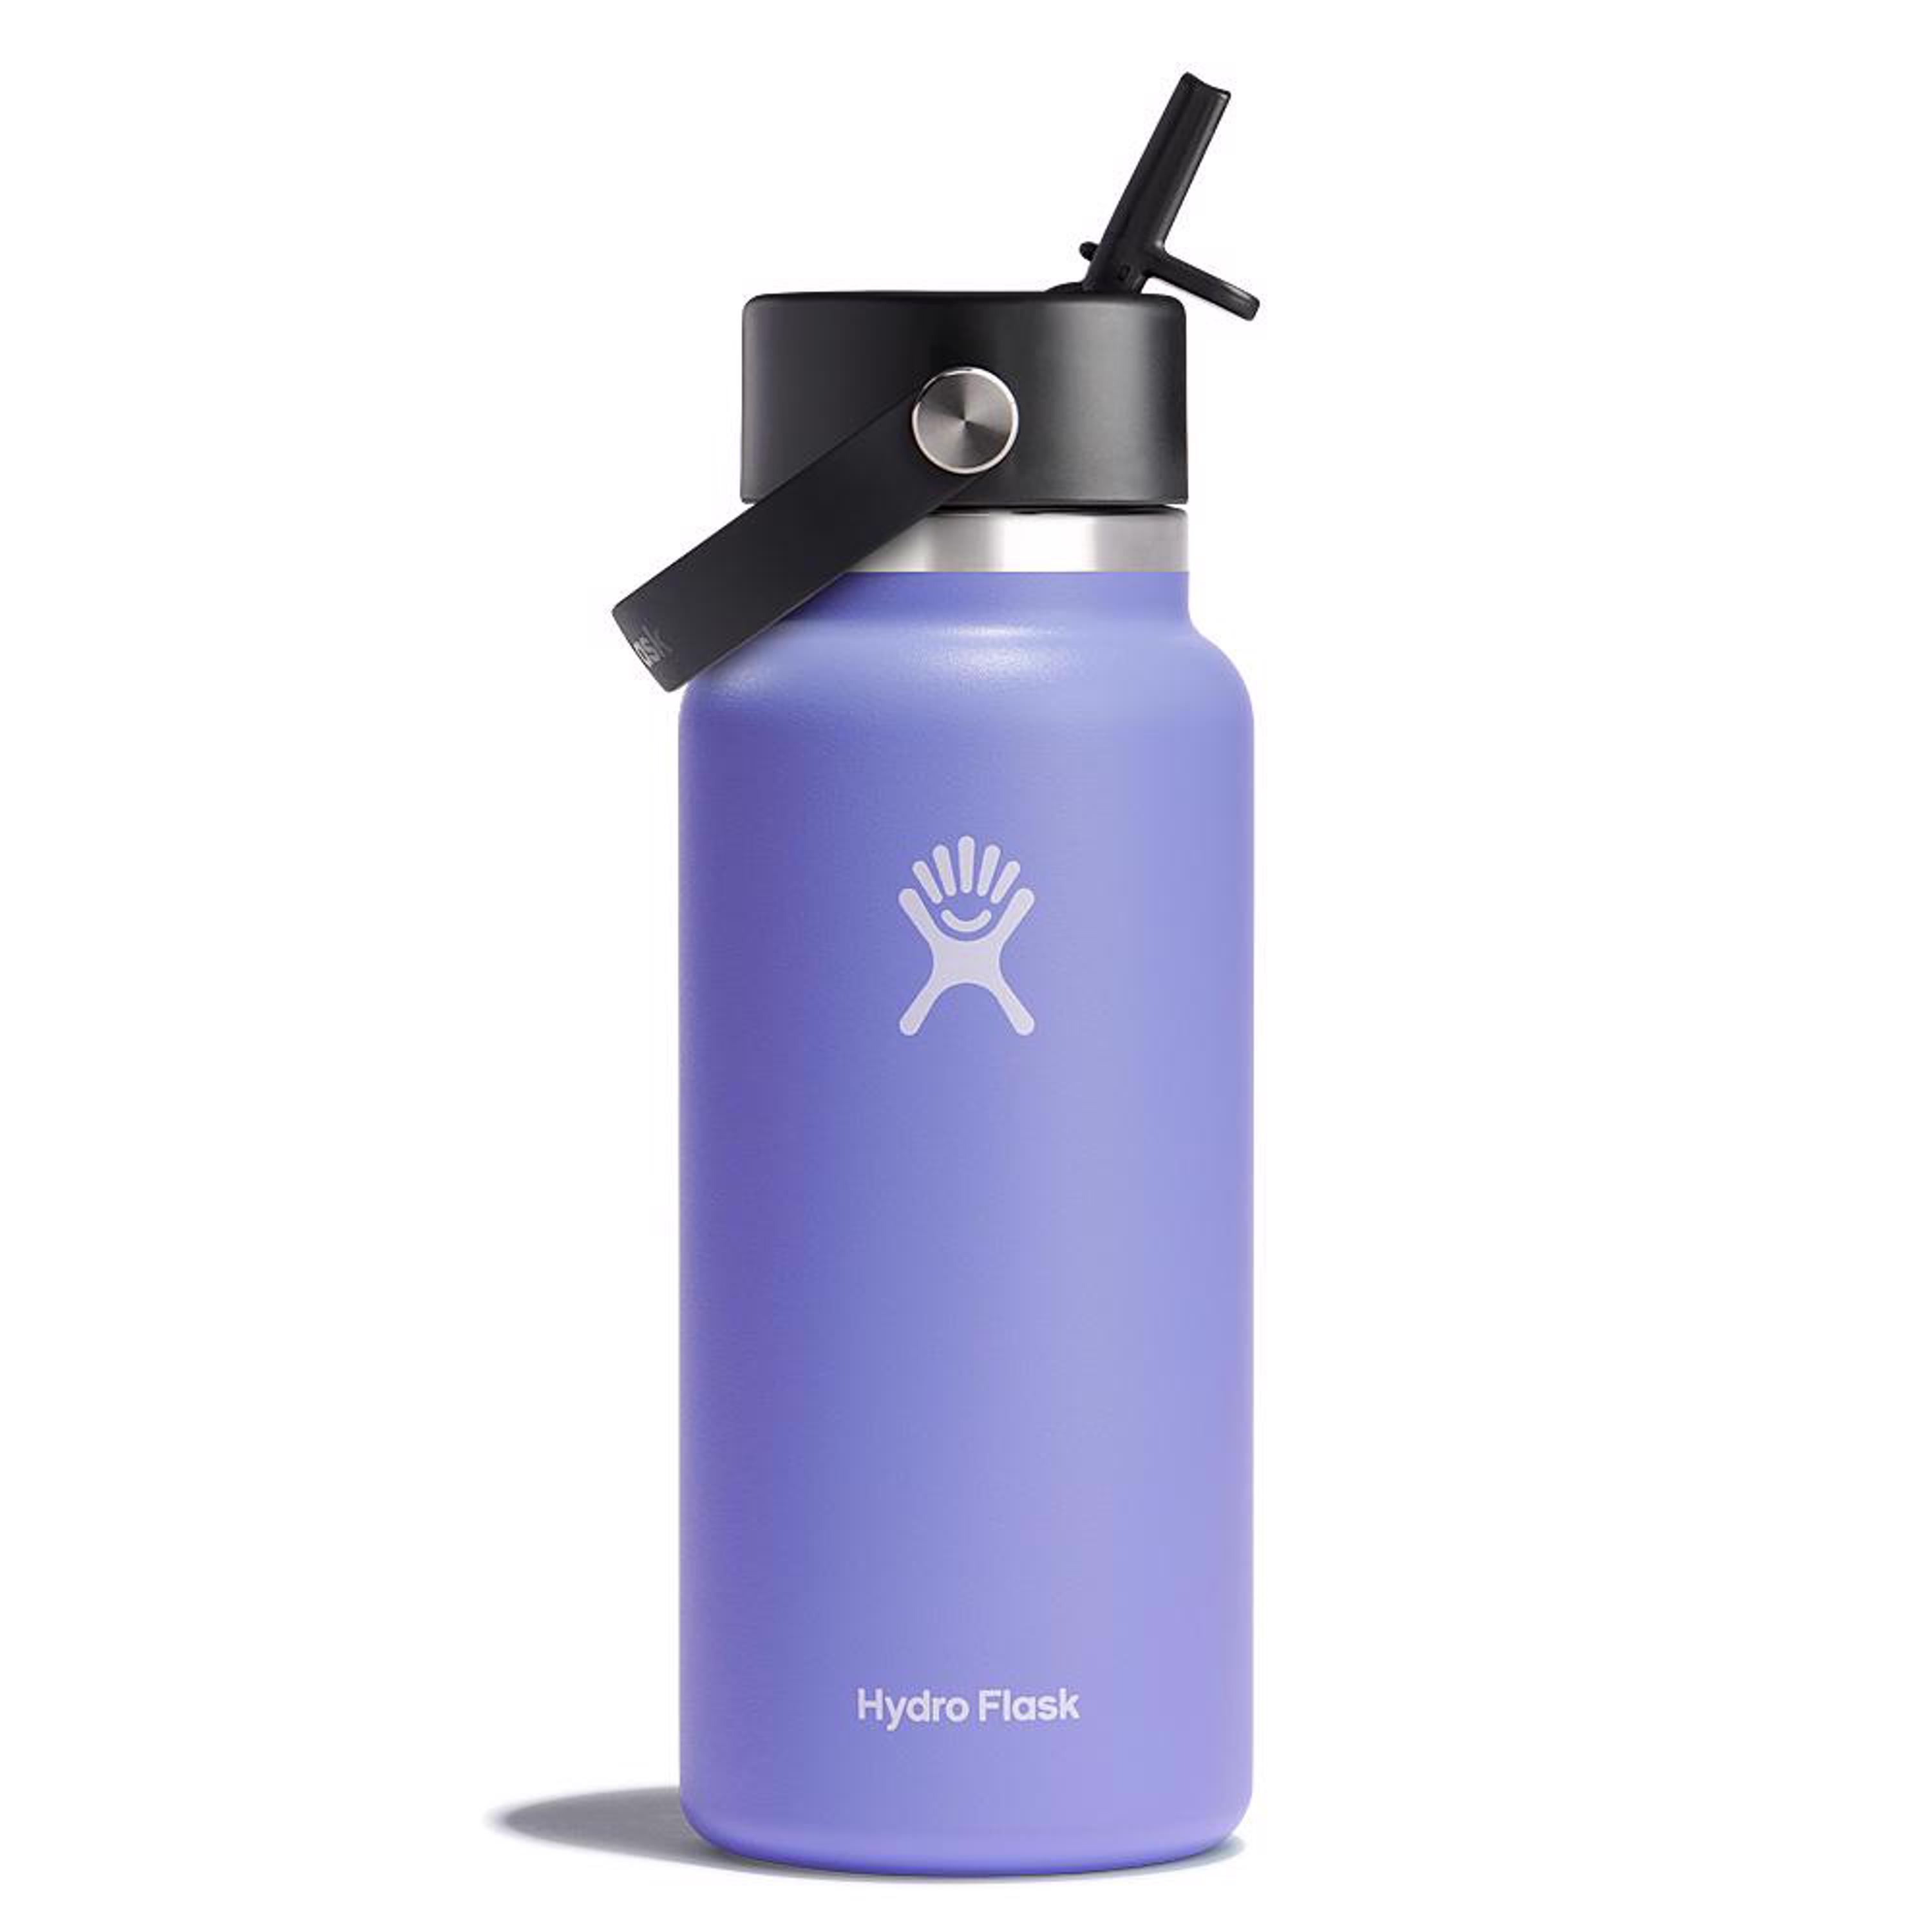 Hydro Flask's no-sweat bottle